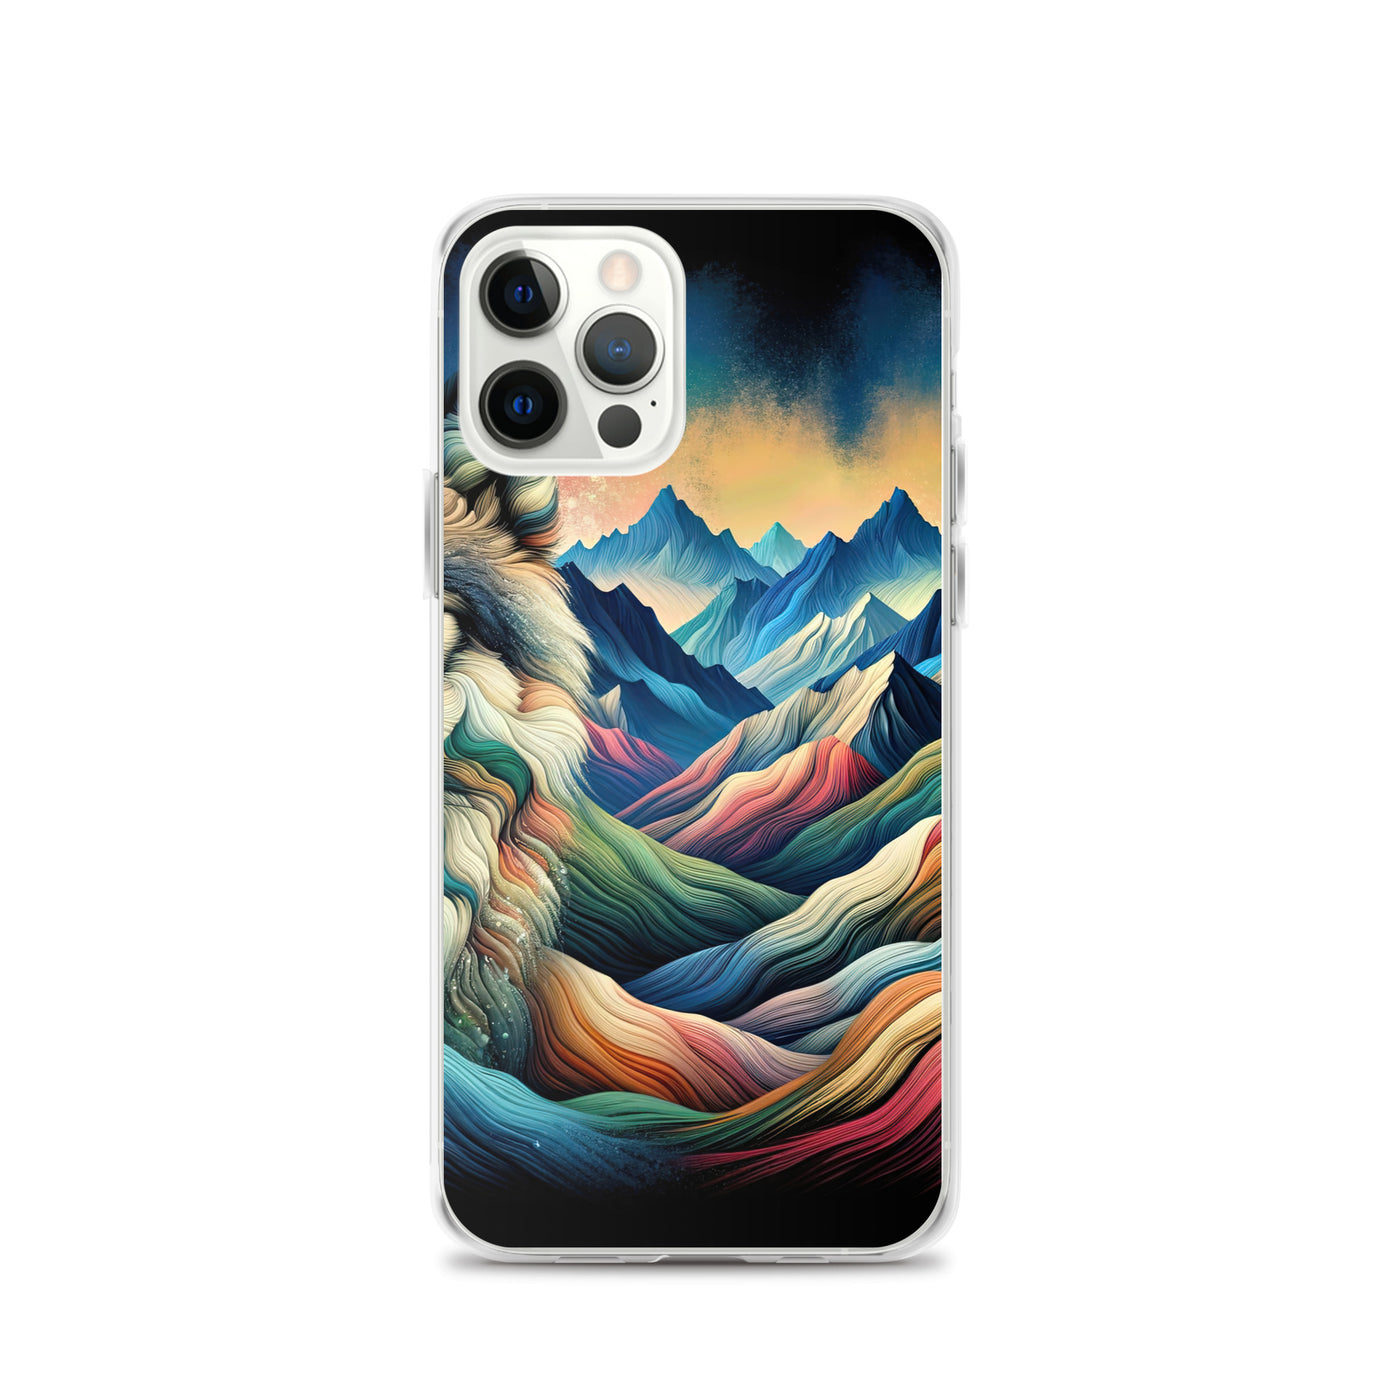 Traumhaftes Alpenpanorama mit Wolf in wechselnden Farben und Mustern (AN) - iPhone Schutzhülle (durchsichtig) xxx yyy zzz iPhone 12 Pro